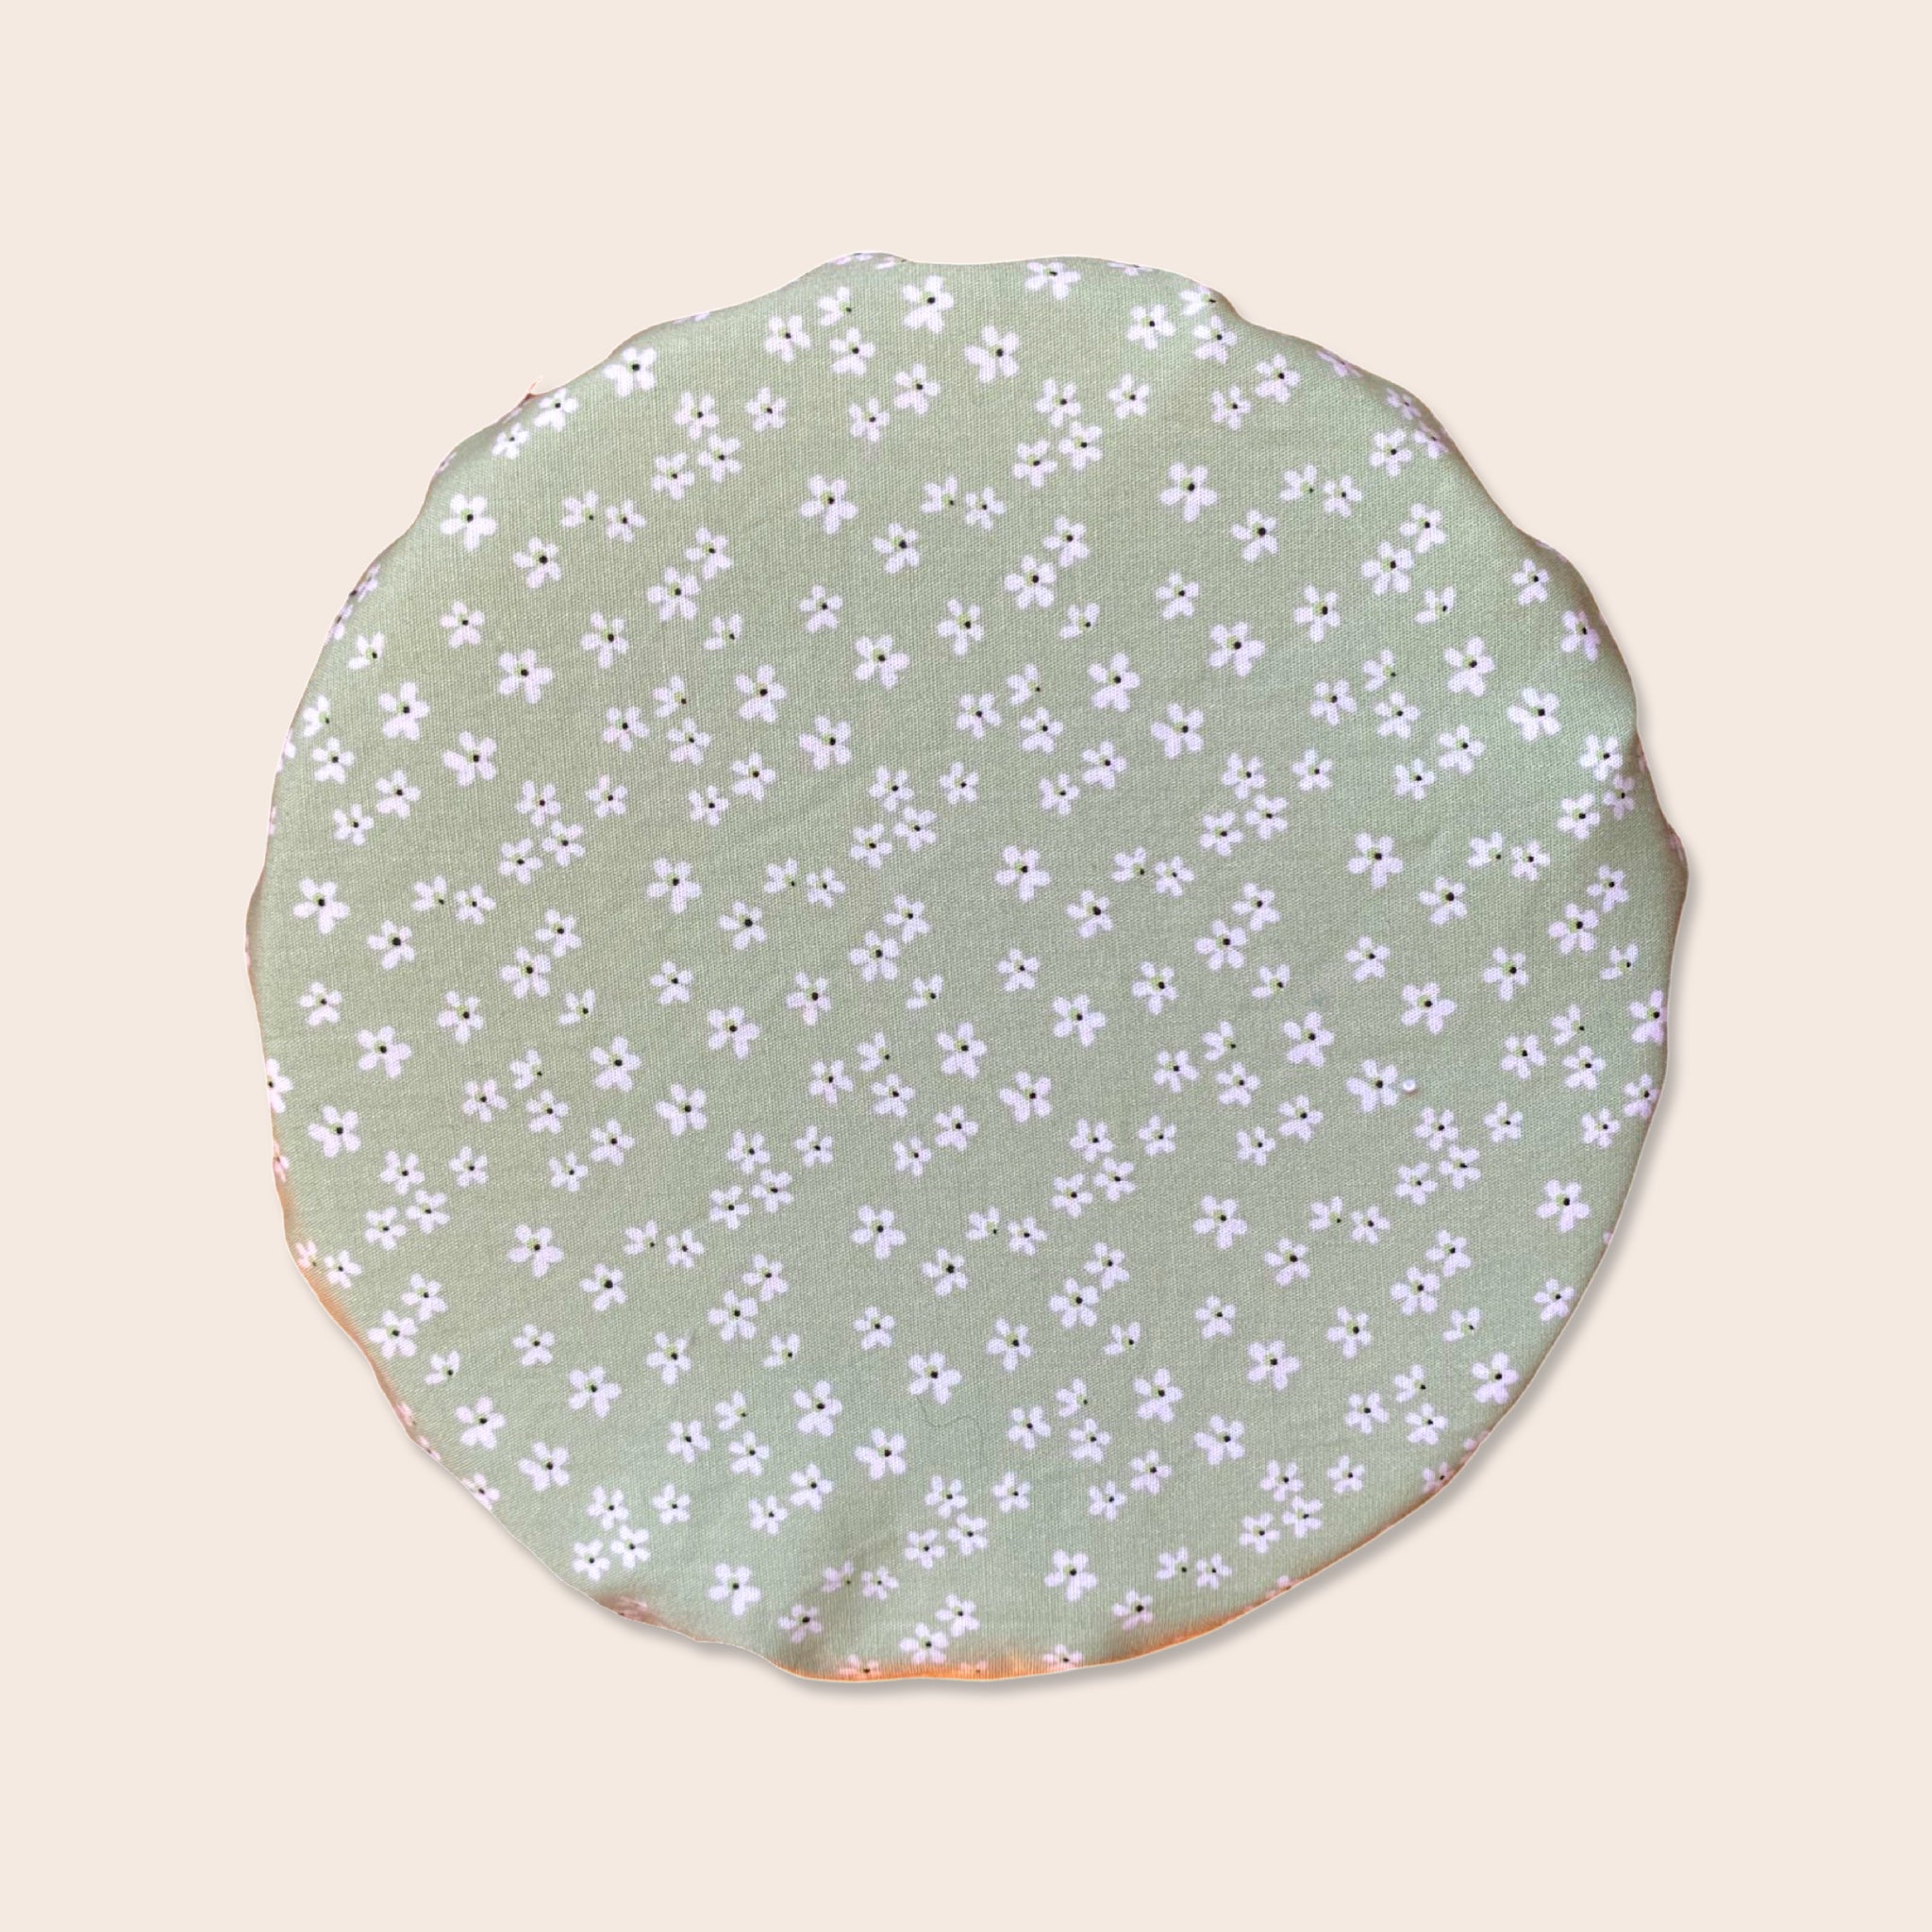 Mint Floral Dessert Bowl Cover